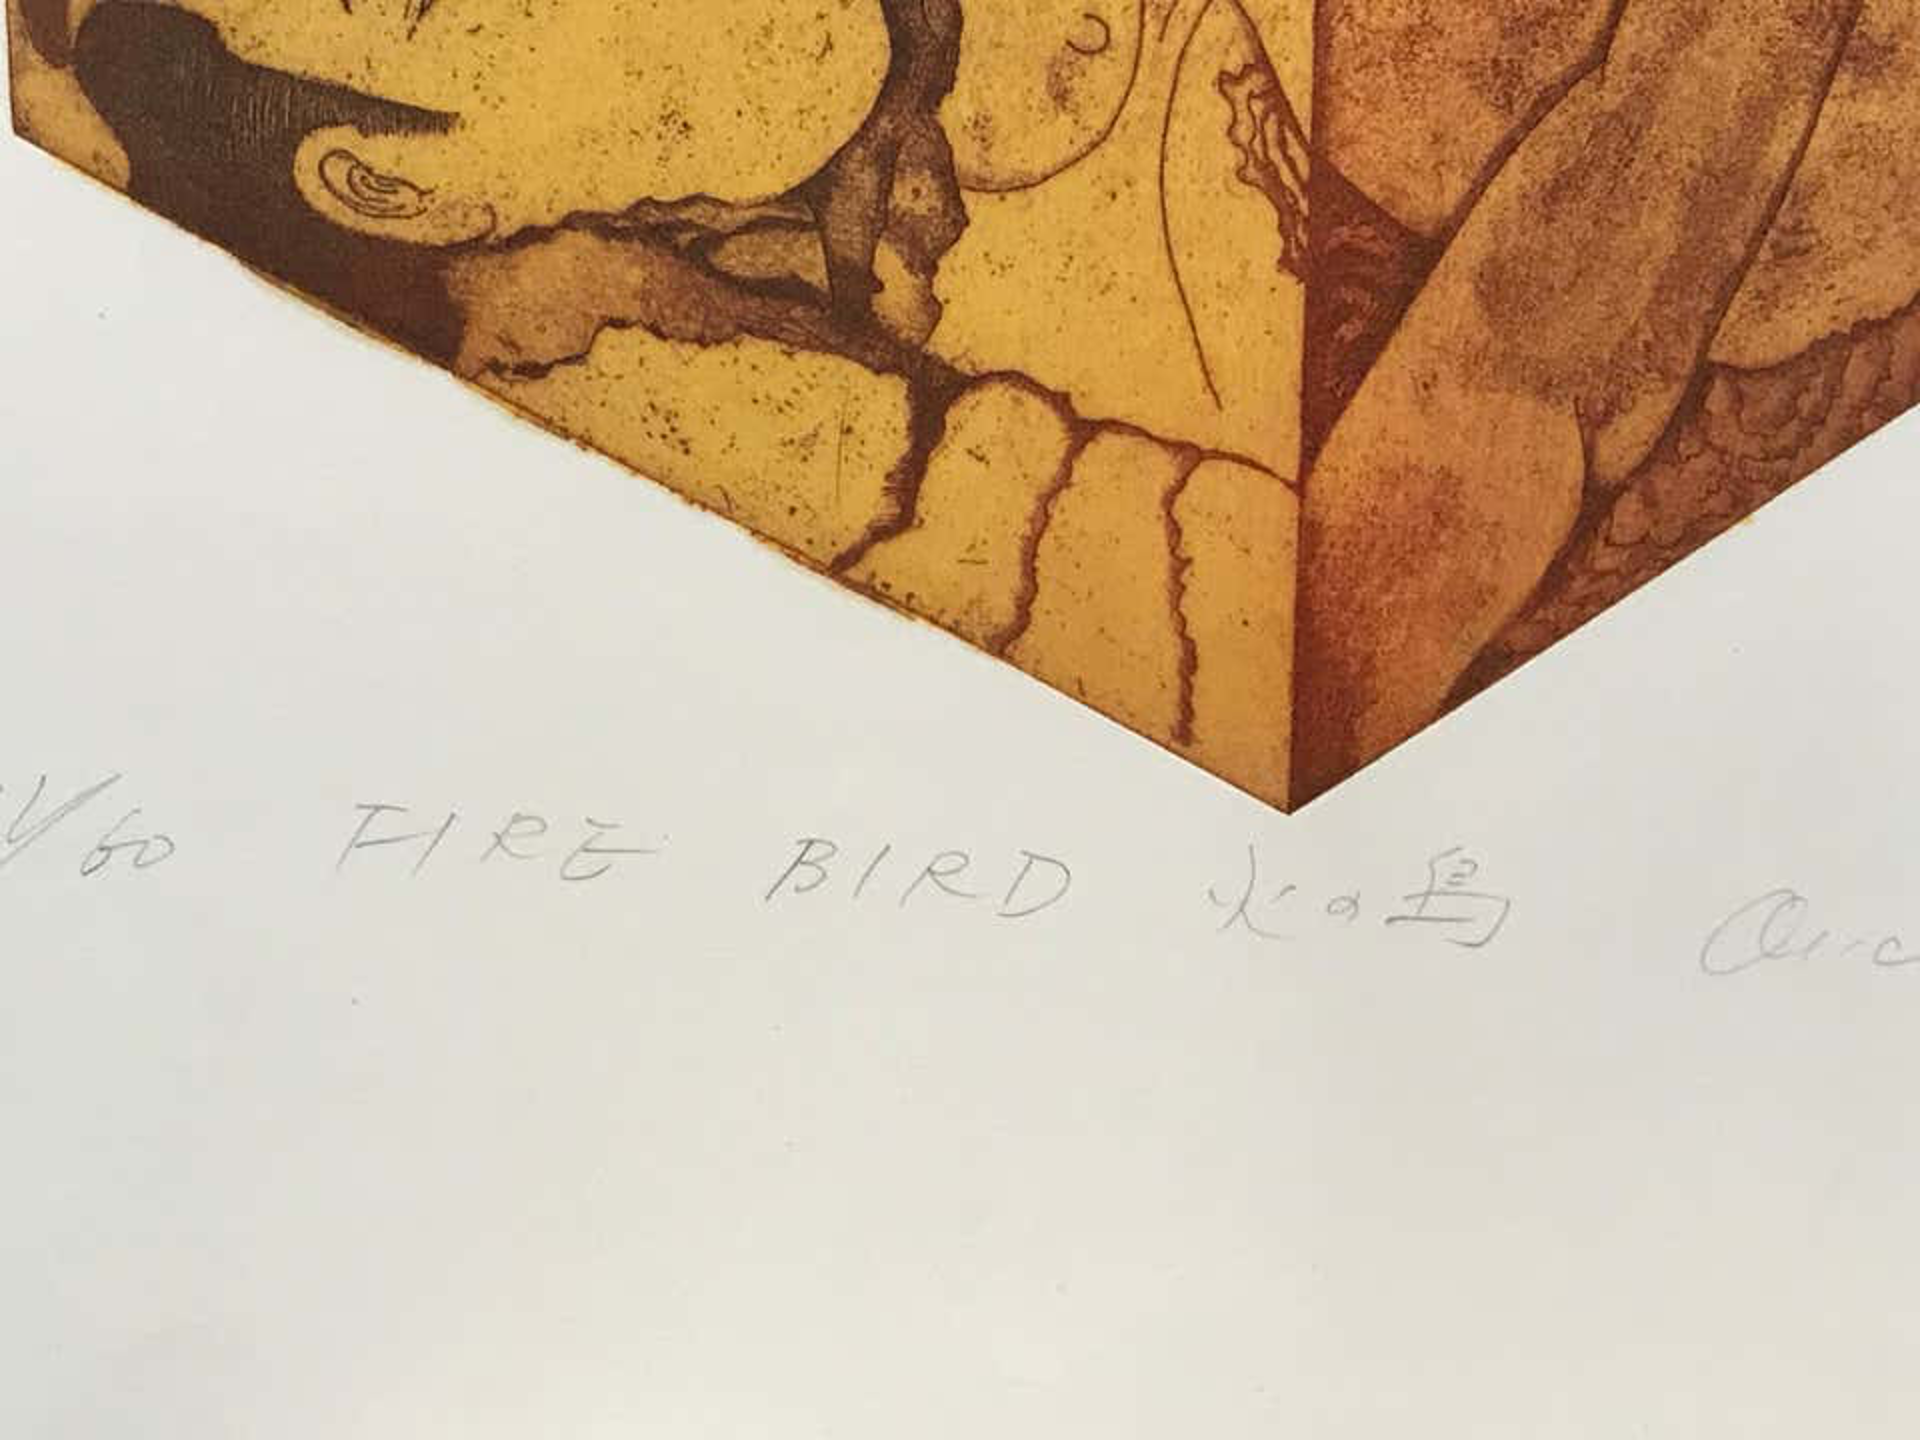 Fire Bird by Makoto Ouchi